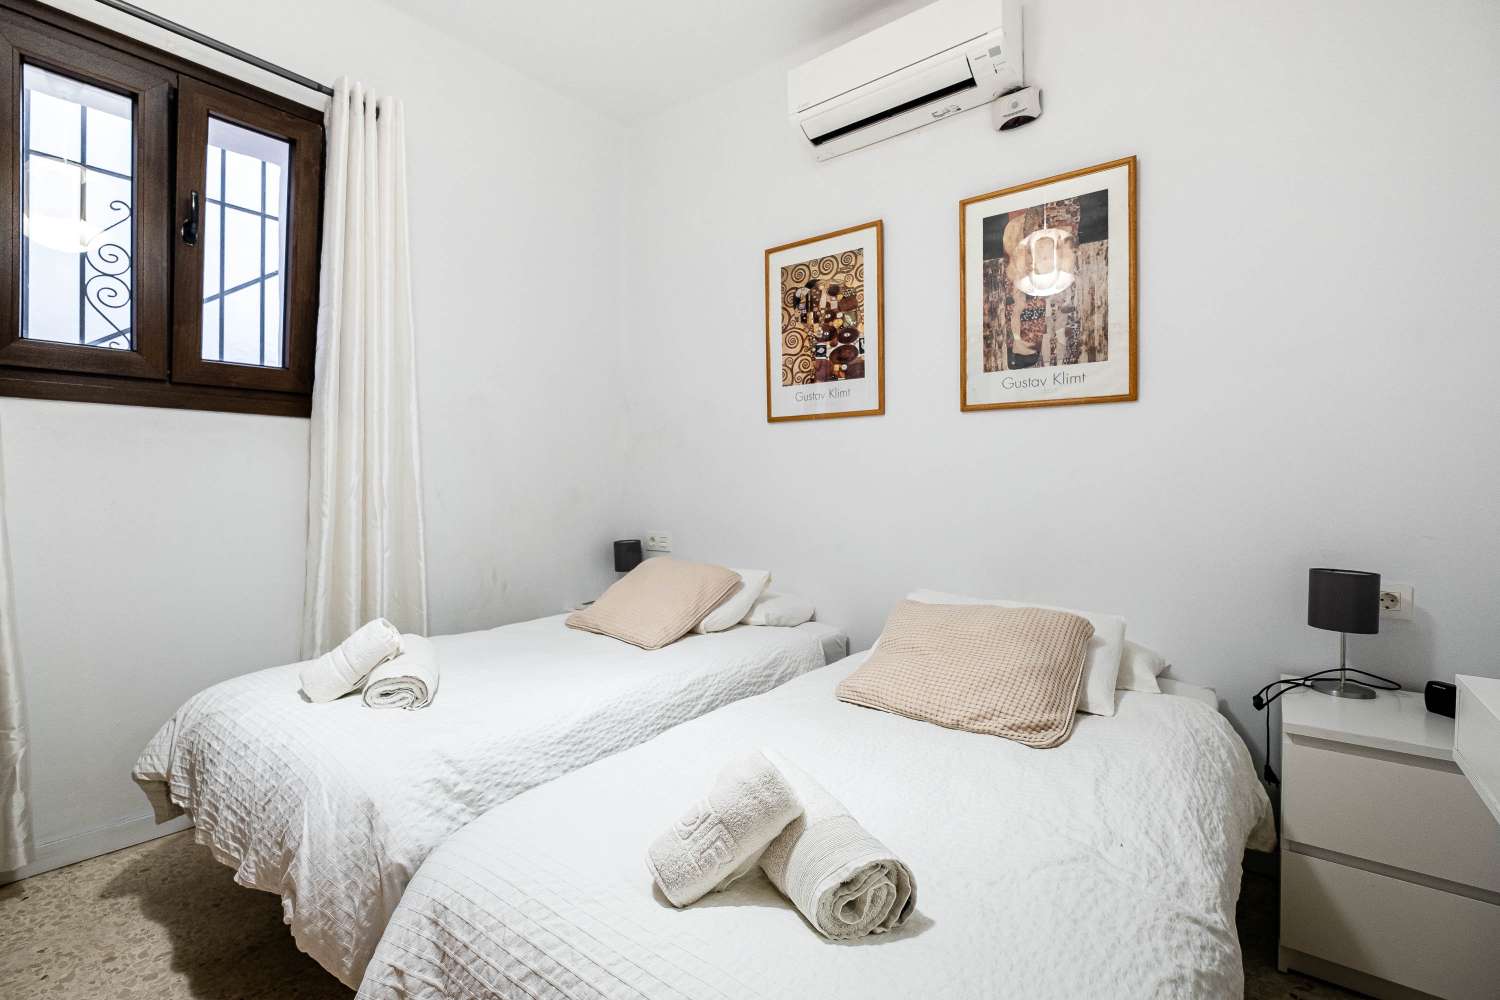 Capistrano Playa - Onlangs gerenoveerd appartement met 2 slaapkamers